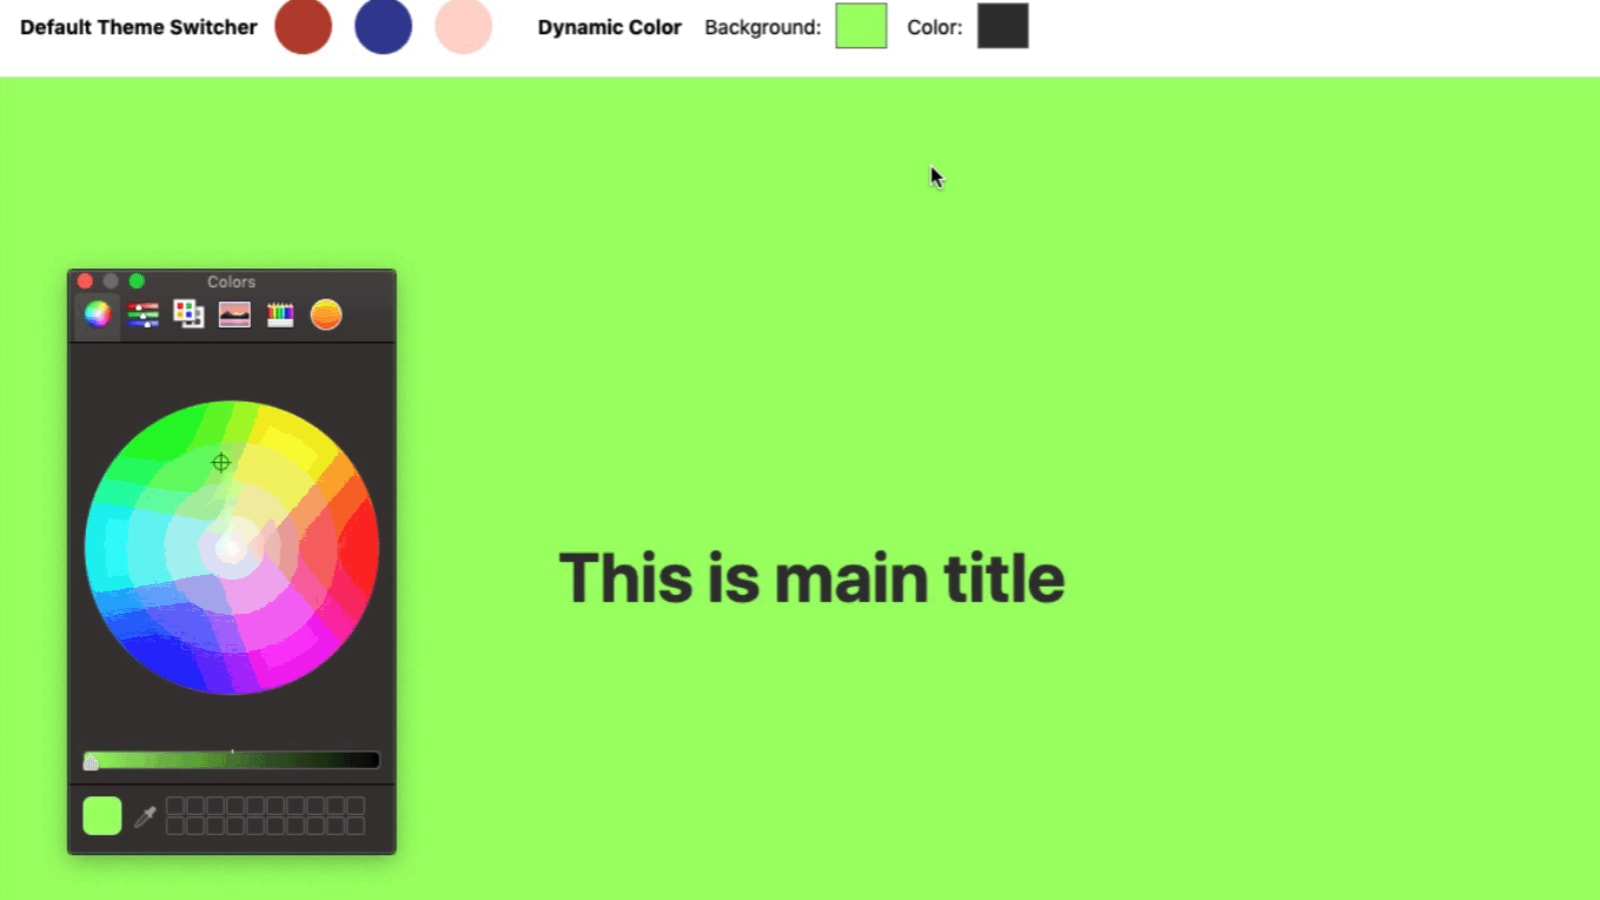 Một giao diện trình chuyển màu tiên tiến với loại đầu vào màu và biến CSS! Với công nghệ này, các bạn sẽ dễ dàng tạo ra các trang web đẹp mắt và phong phú về màu sắc. Hãy xem chi tiết ảnh về cách thức hoạt động của giao diện này trên DEV.